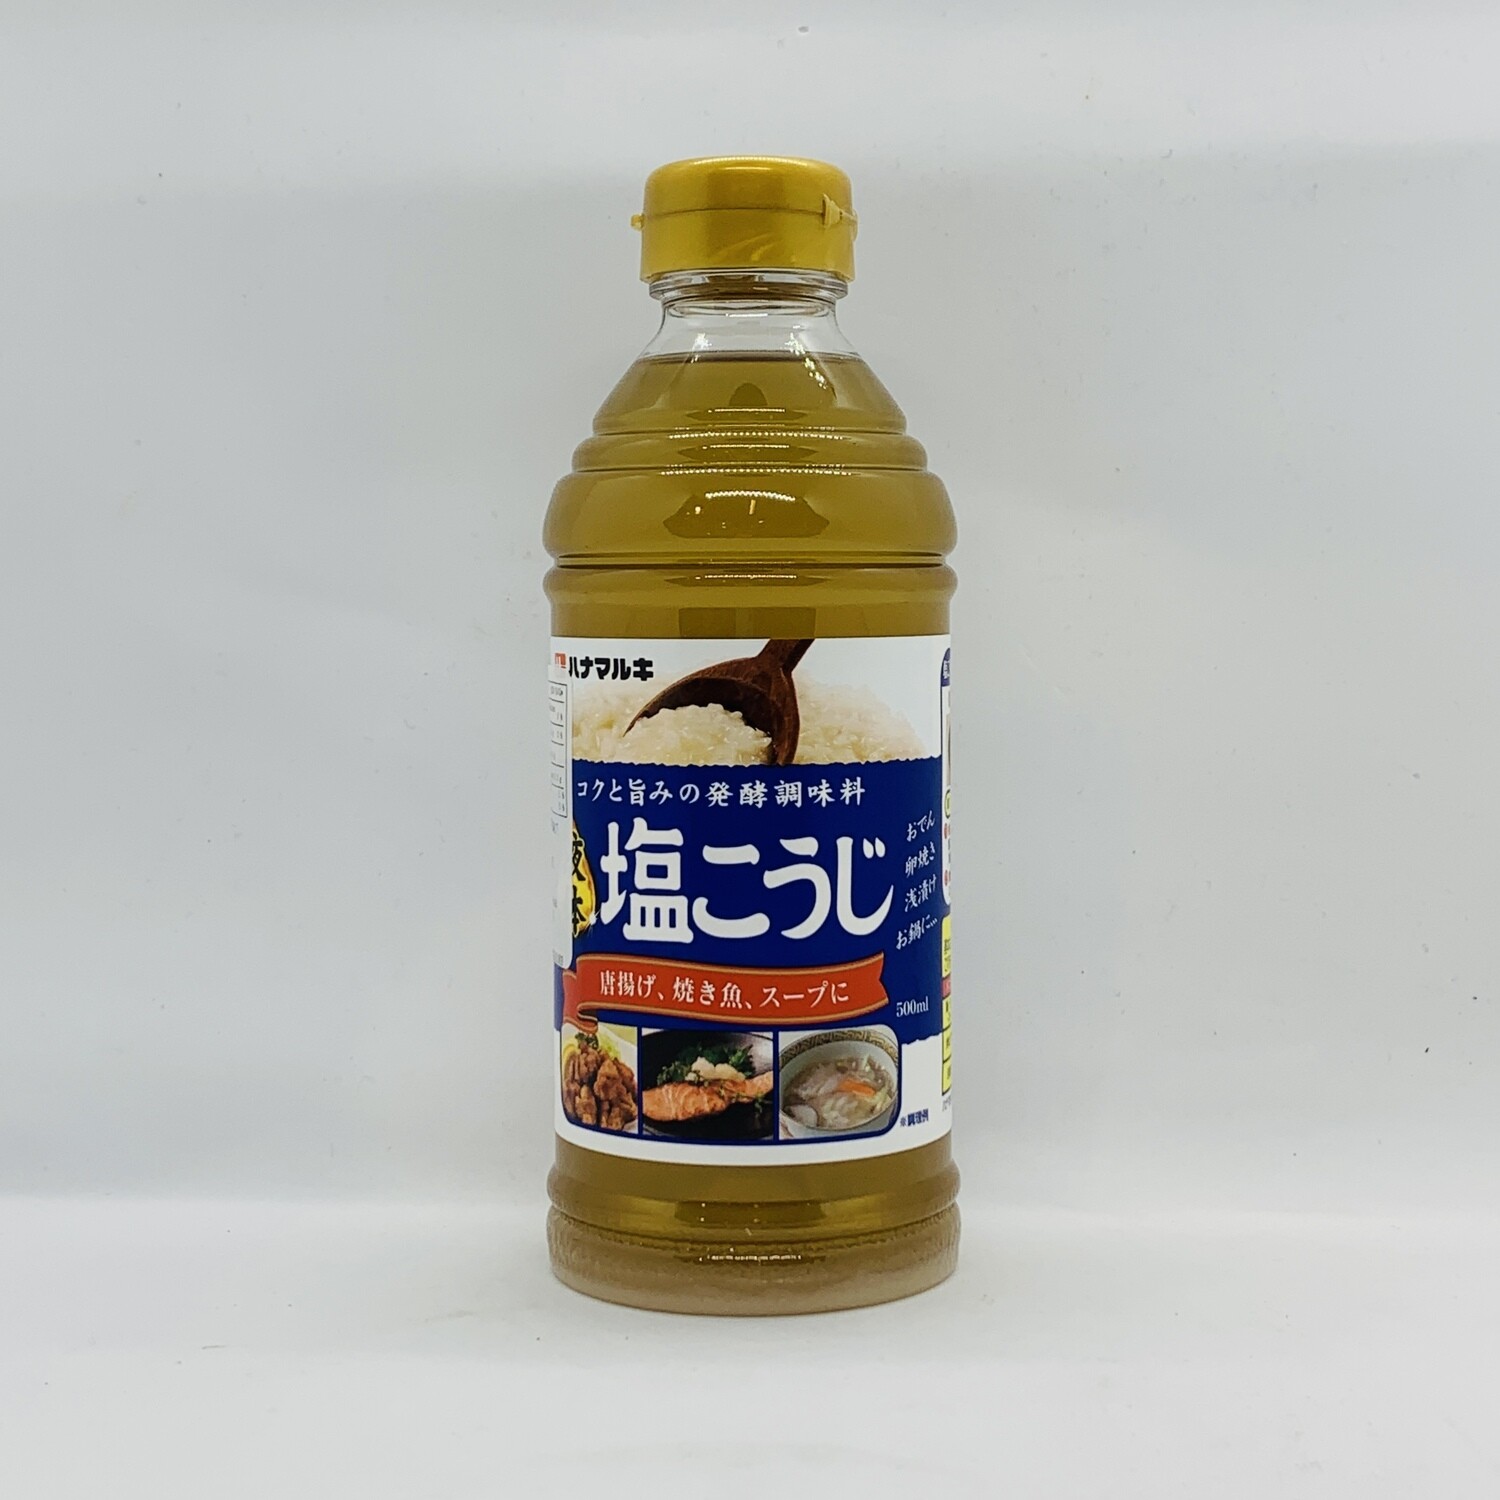 HANAMARUKI Shio Koji Liquid